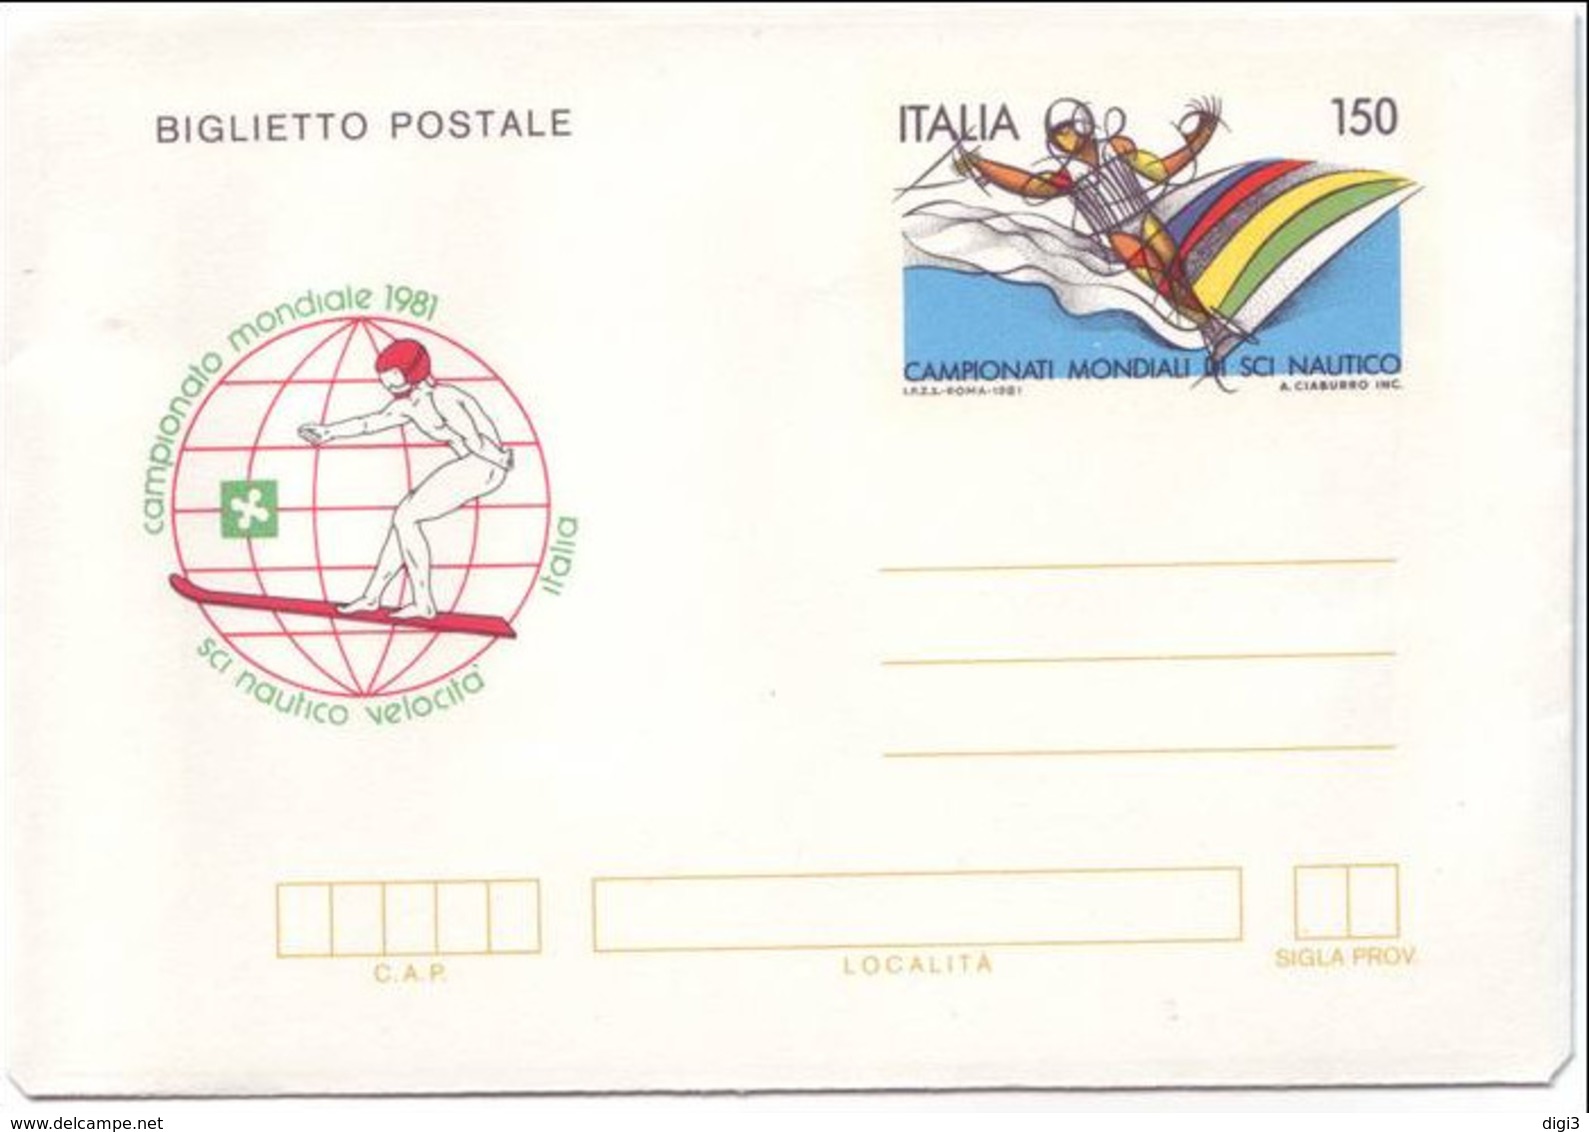 Italia, 1981, Biglietto Postale, Campionati Di Sci Nautico, L. 150, Nuovo - Entero Postal